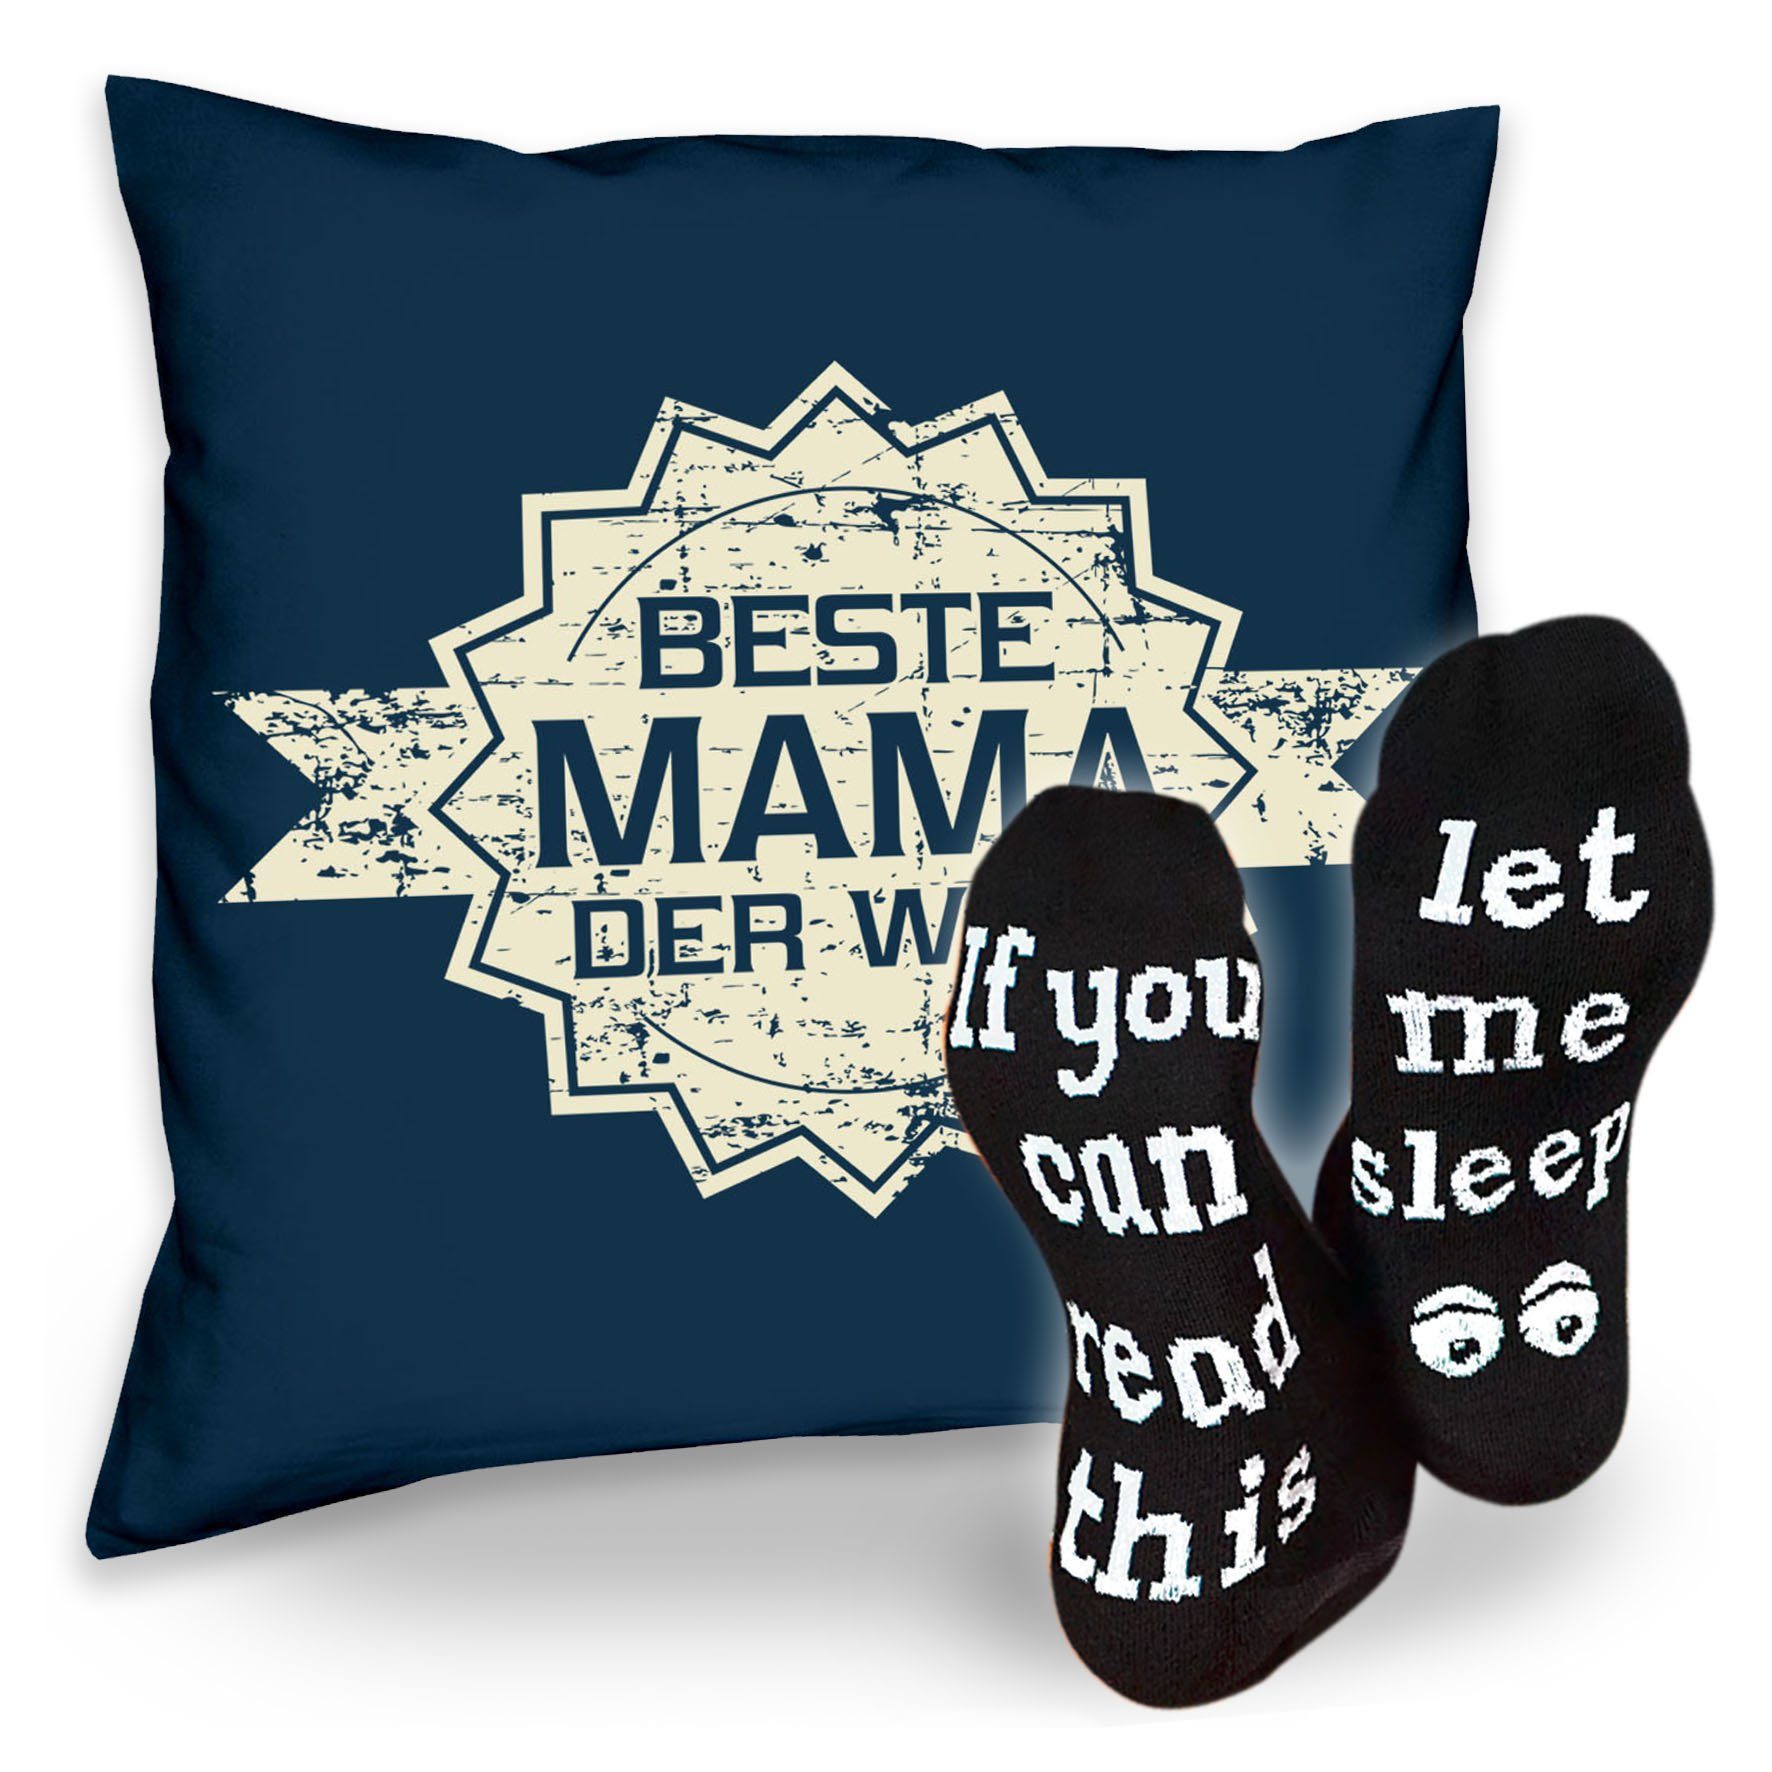 der Geschenkidee Sleep, Sprüche navy-blau Mama Soreso® Welt Kissen Socken & Beste Stern Weihnachtsgeschenk Dekokissen